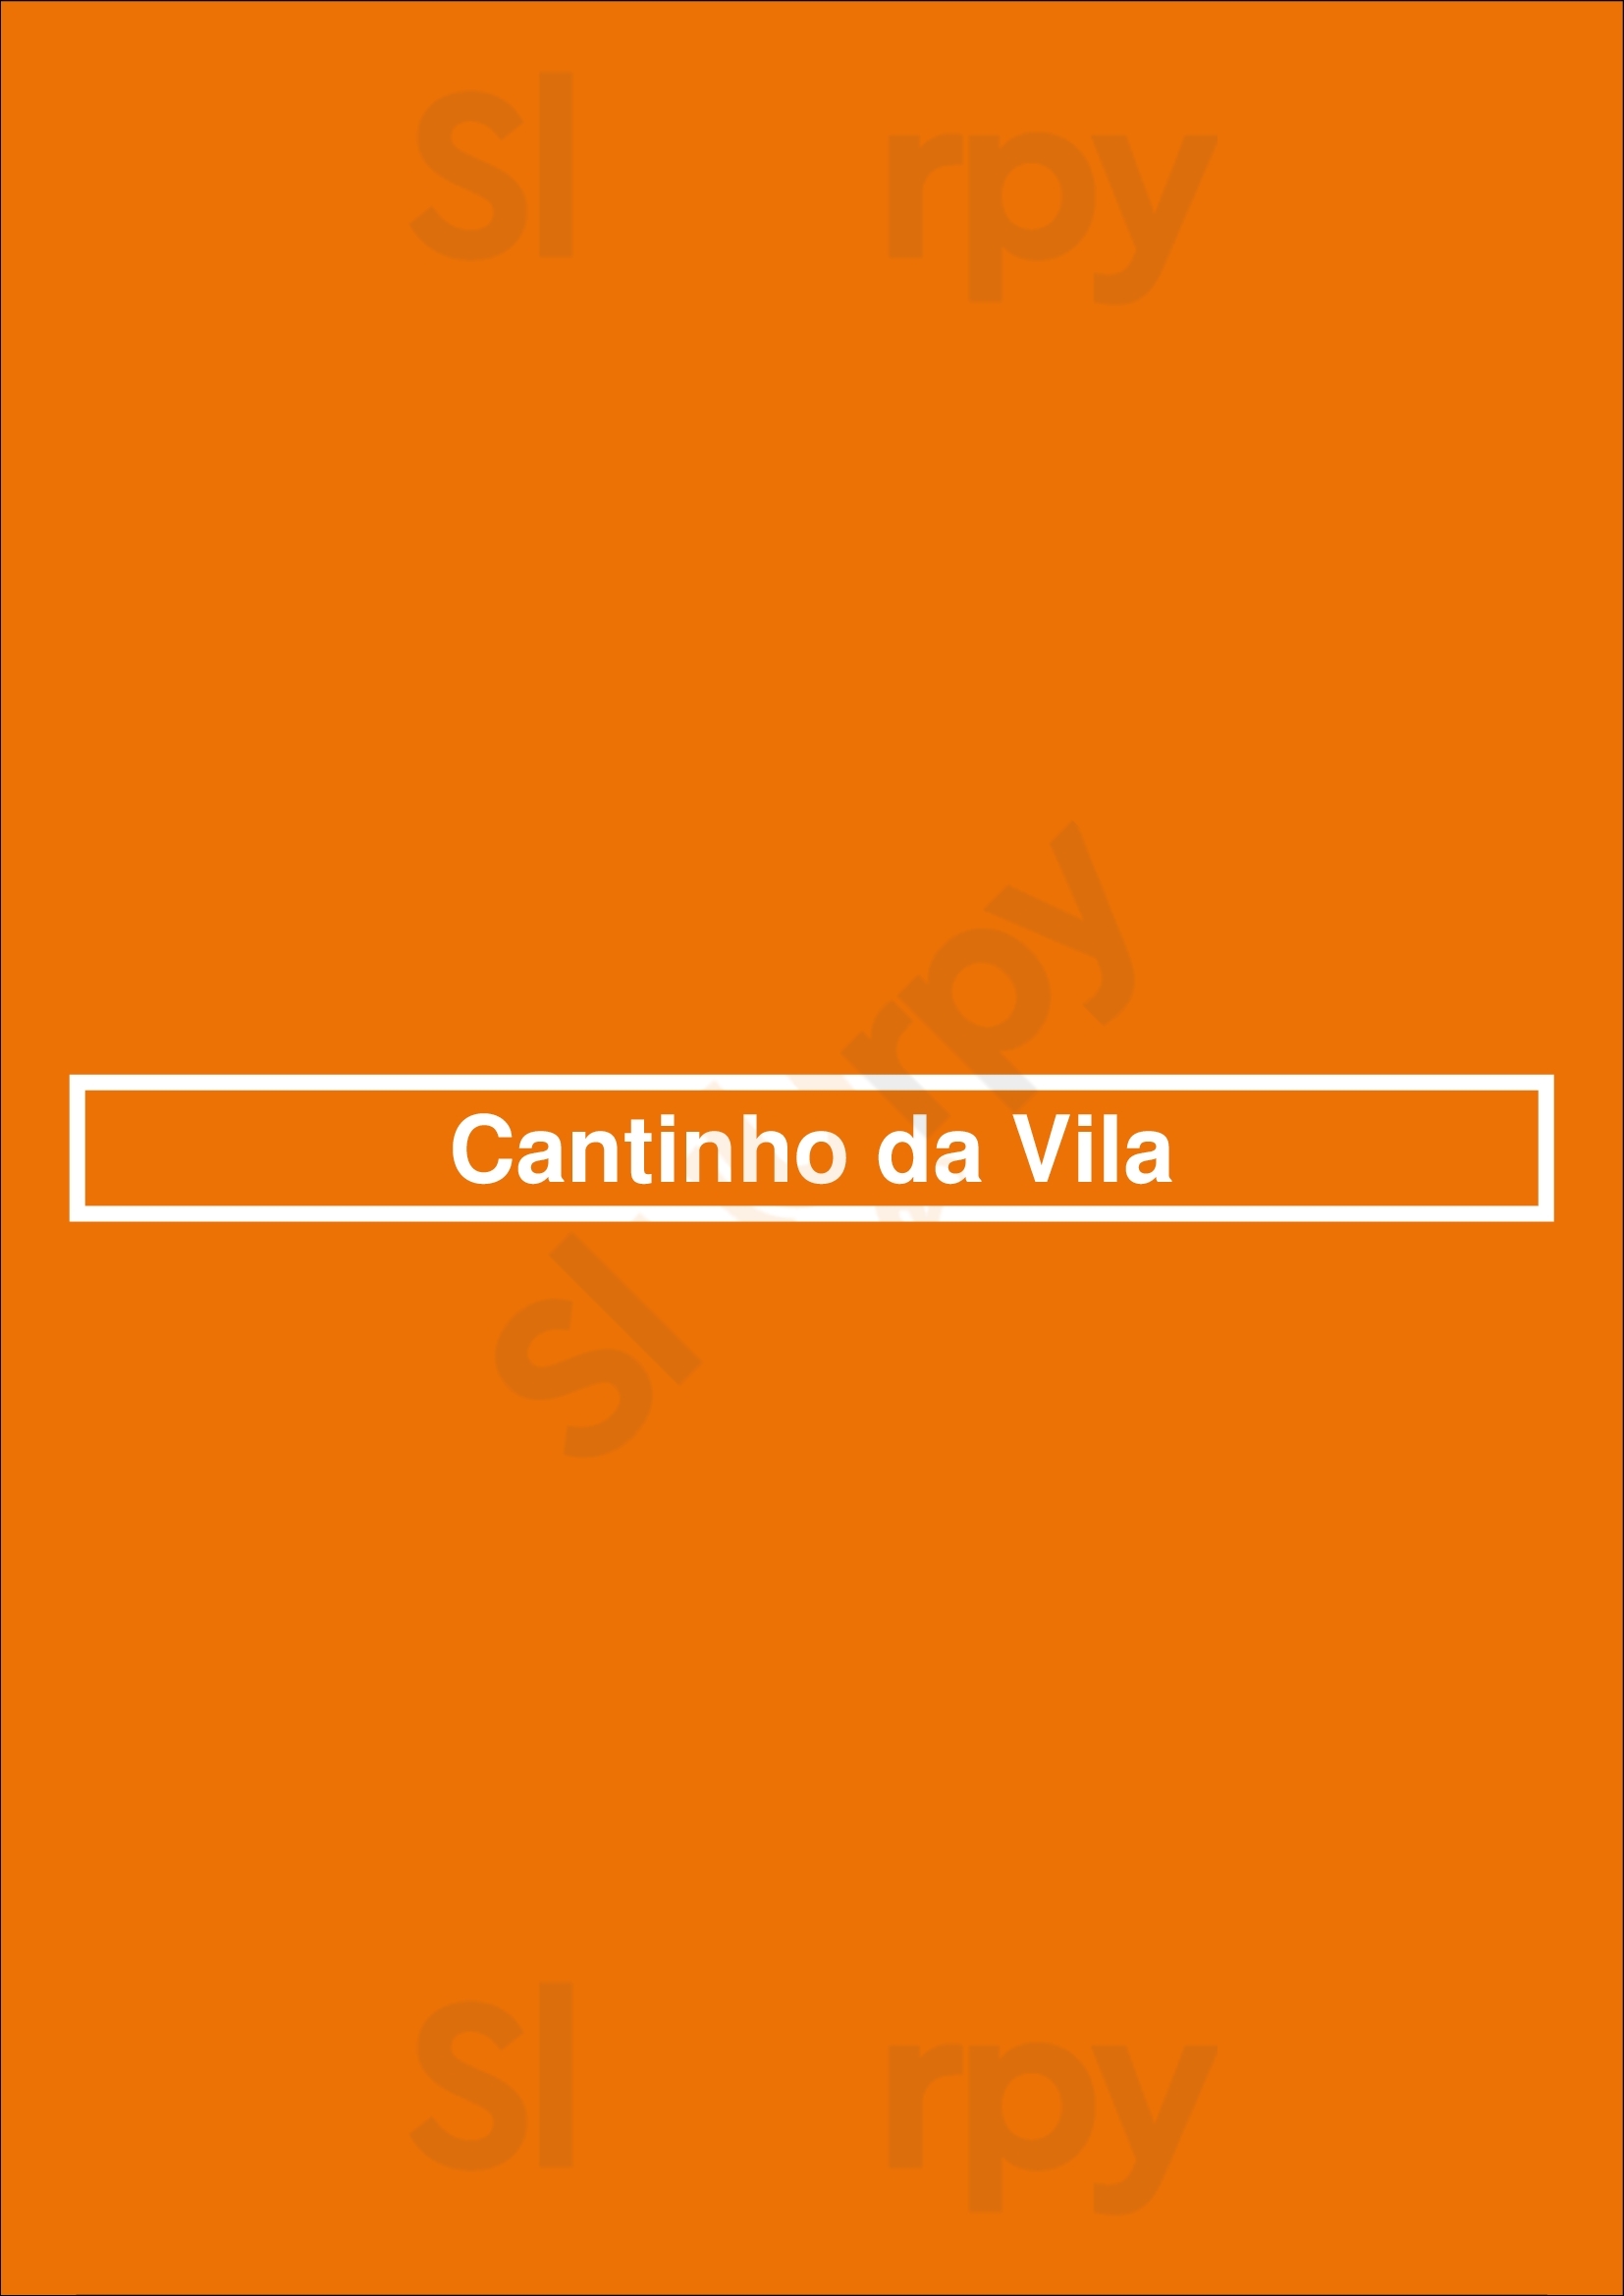 Cantinho Da Vila Sintra Menu - 1